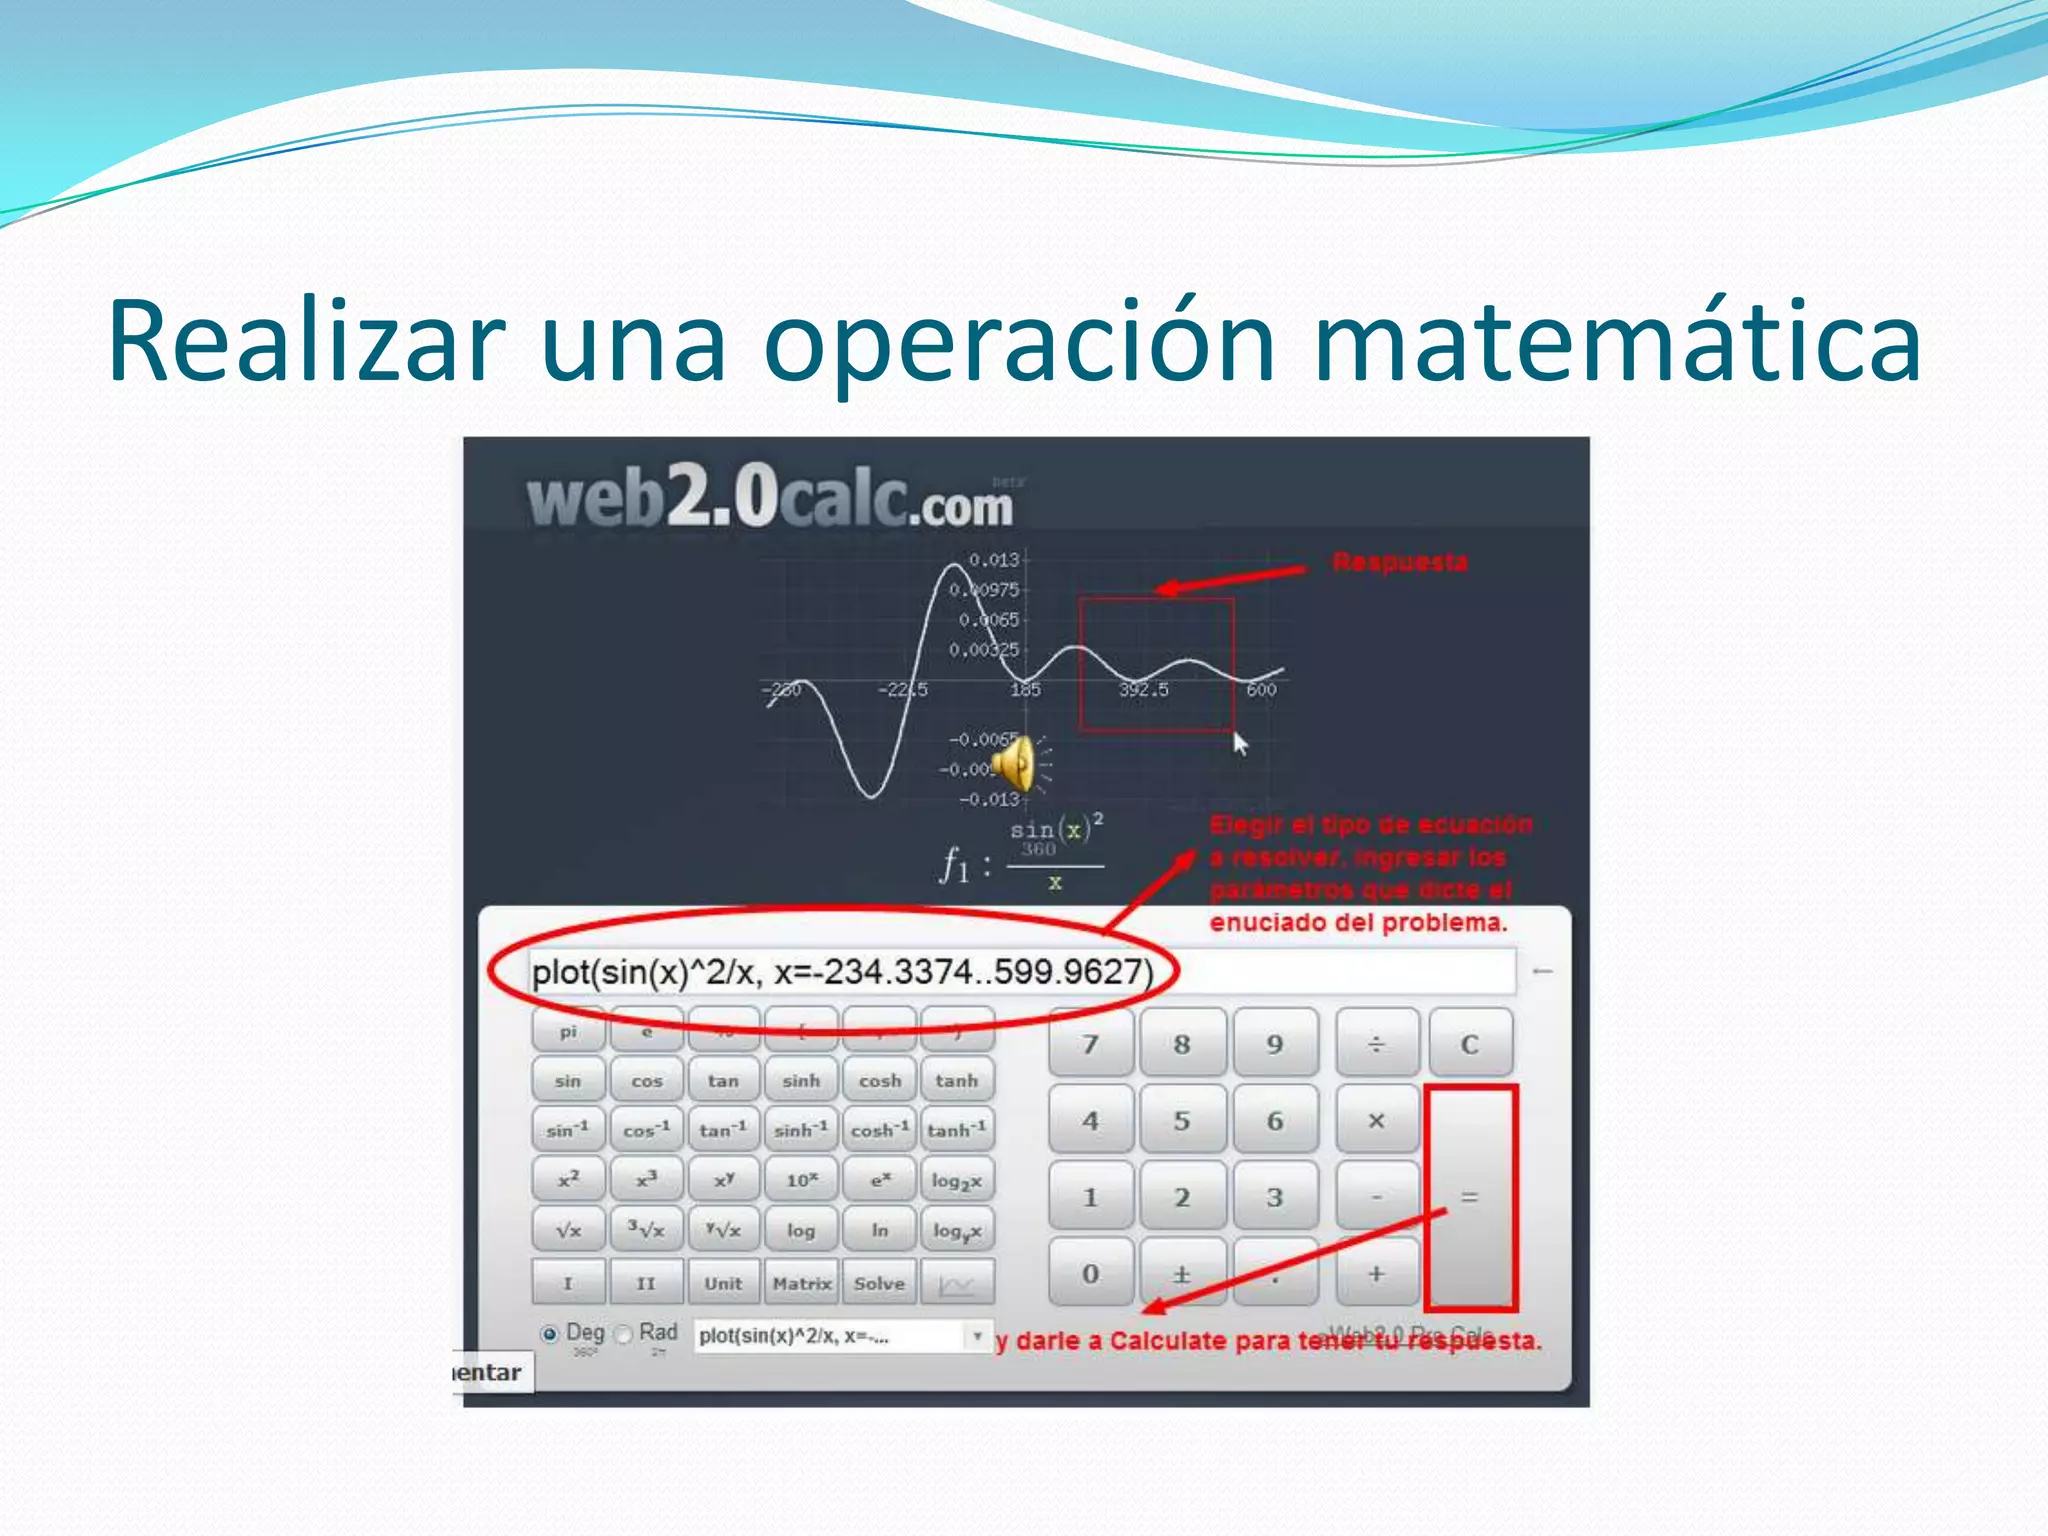 Profesión Adepto Descuidado Web 2.0 scientific calculator